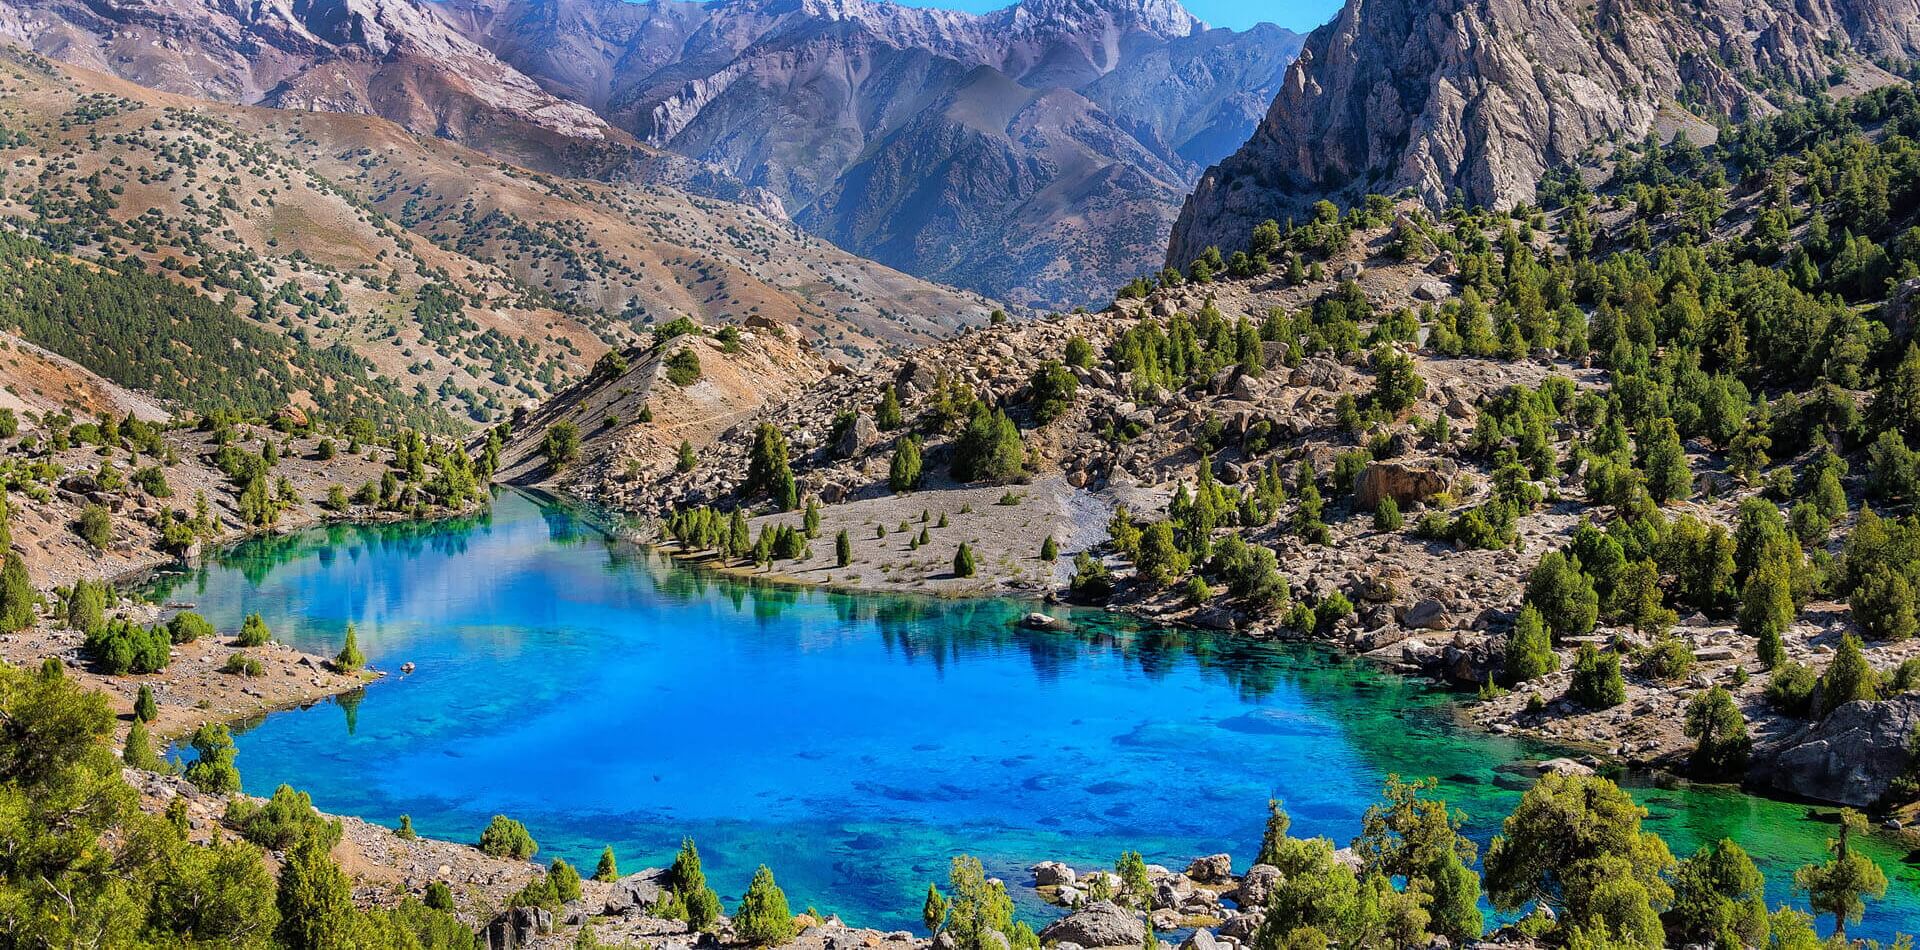 Uzbekistāna un Tadžikistāna  <span> Kalni, ezeri, tuksnesis un senā vēsture</span>